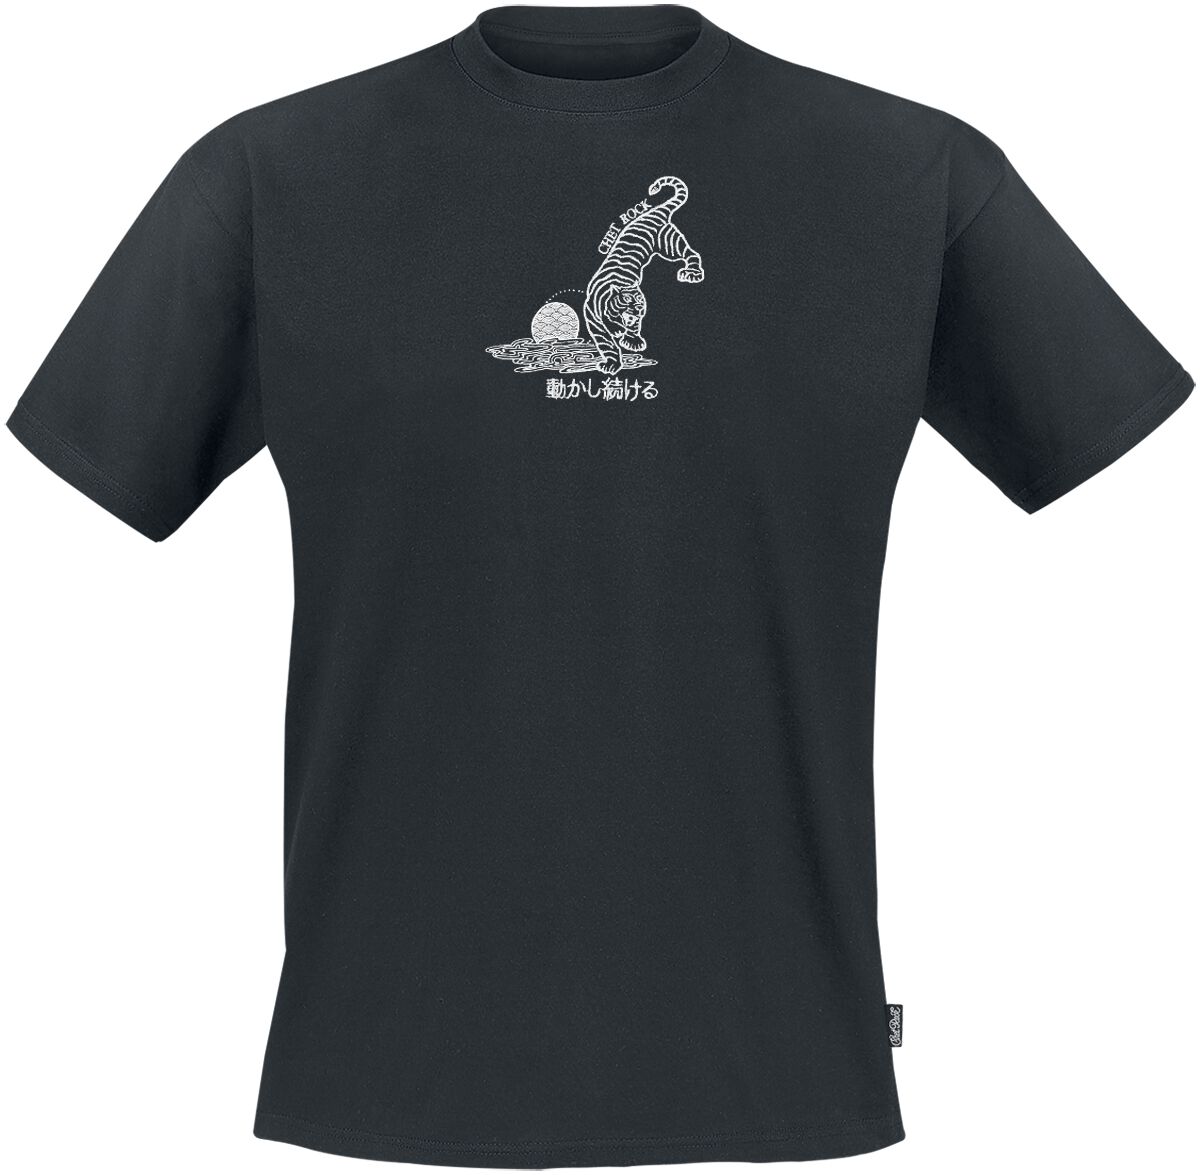 Chet Rock T-Shirt - Crouching Tiger - S bis XXL - für Männer - Größe L - schwarz